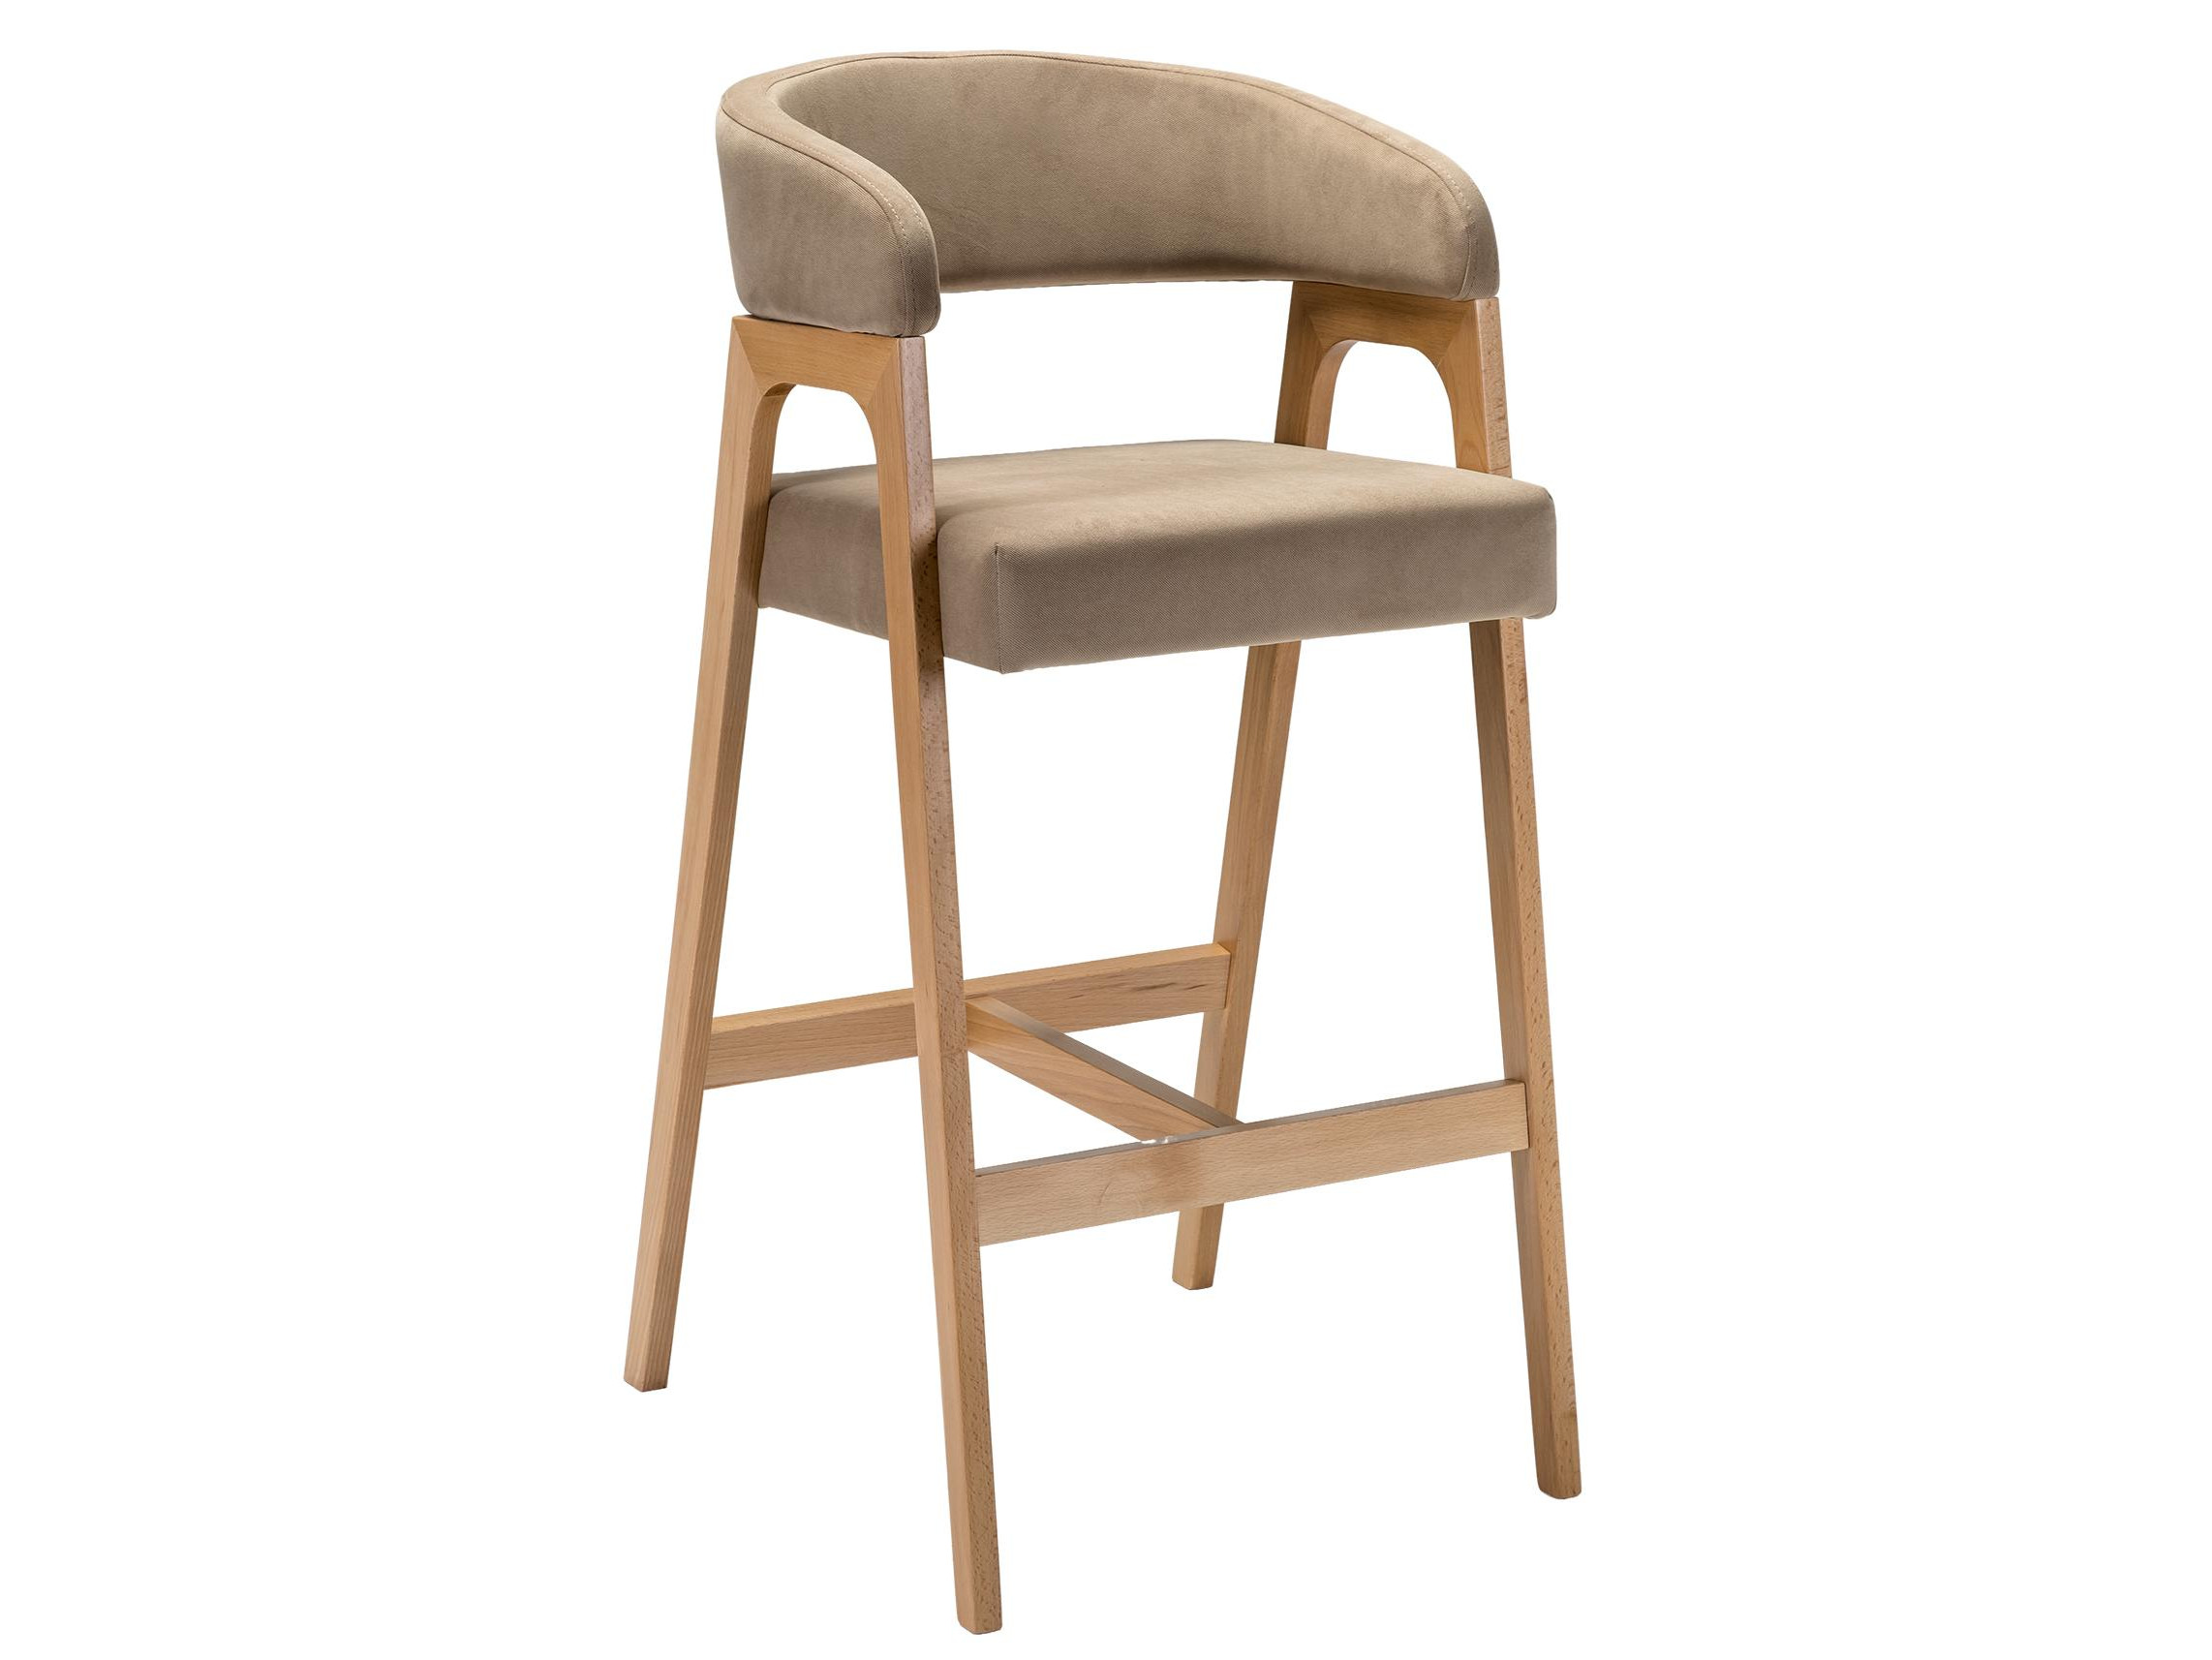 простое барное кресло для отдыха креативное барное кресло скандинавское барное кресло сетчатое красное кресло высокий стул золотое зад Кресло барное Baxter Beige/натур Натуральный бук, Дерево